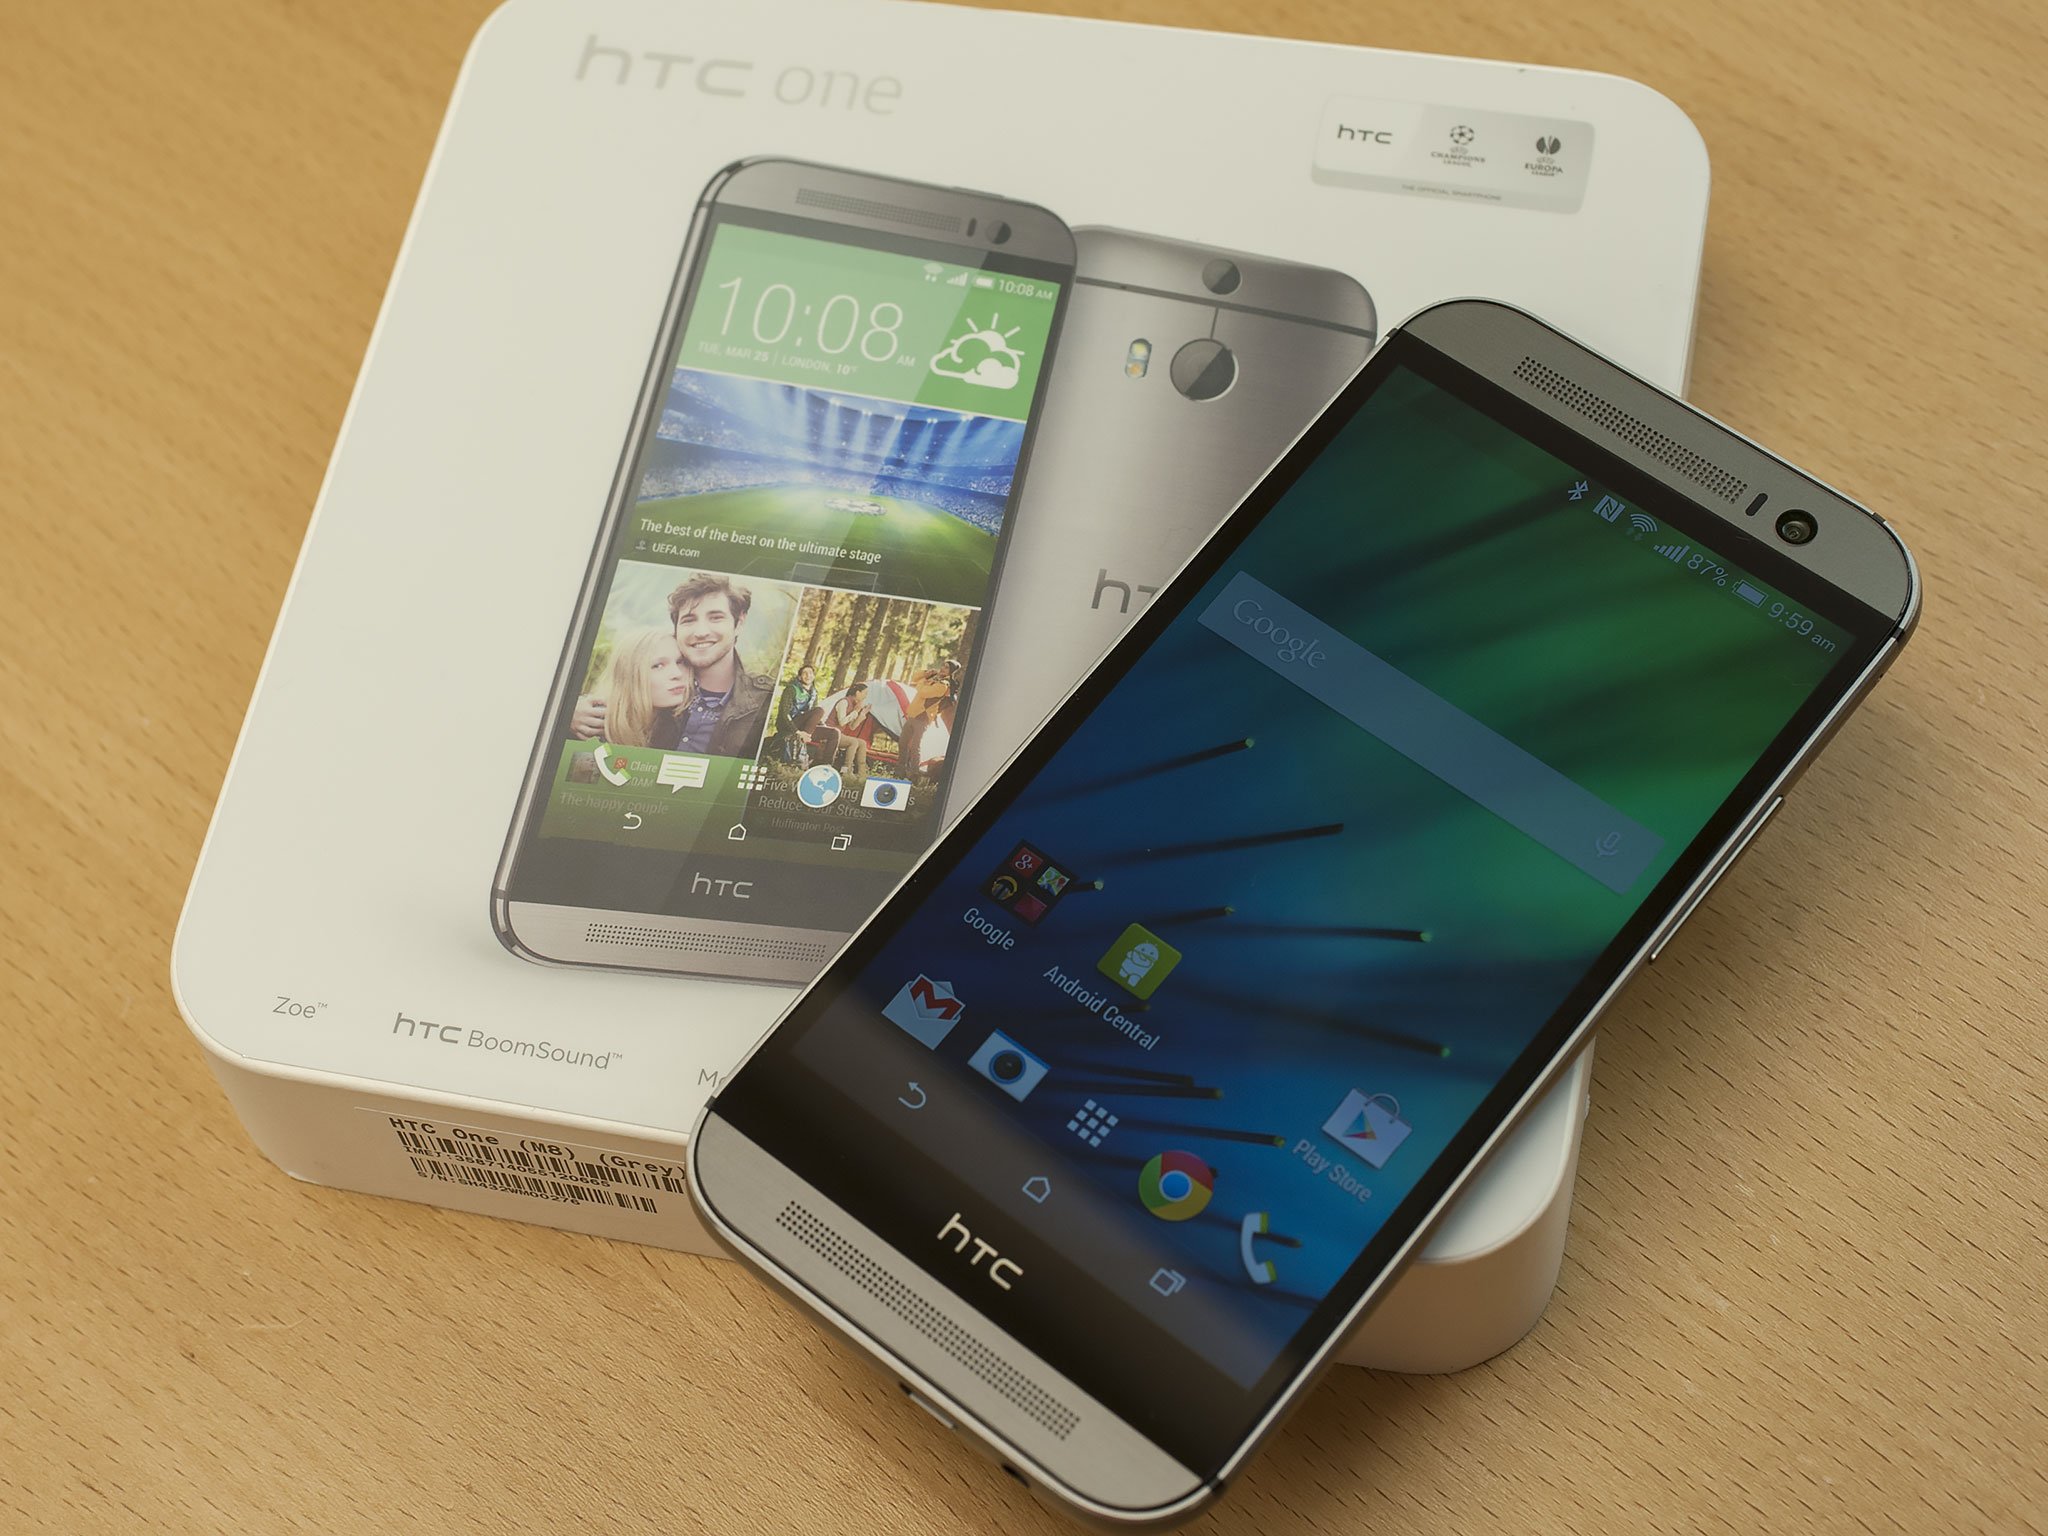 forsætlig Uden skille sig ud HTC One (M8) specs | Android Central